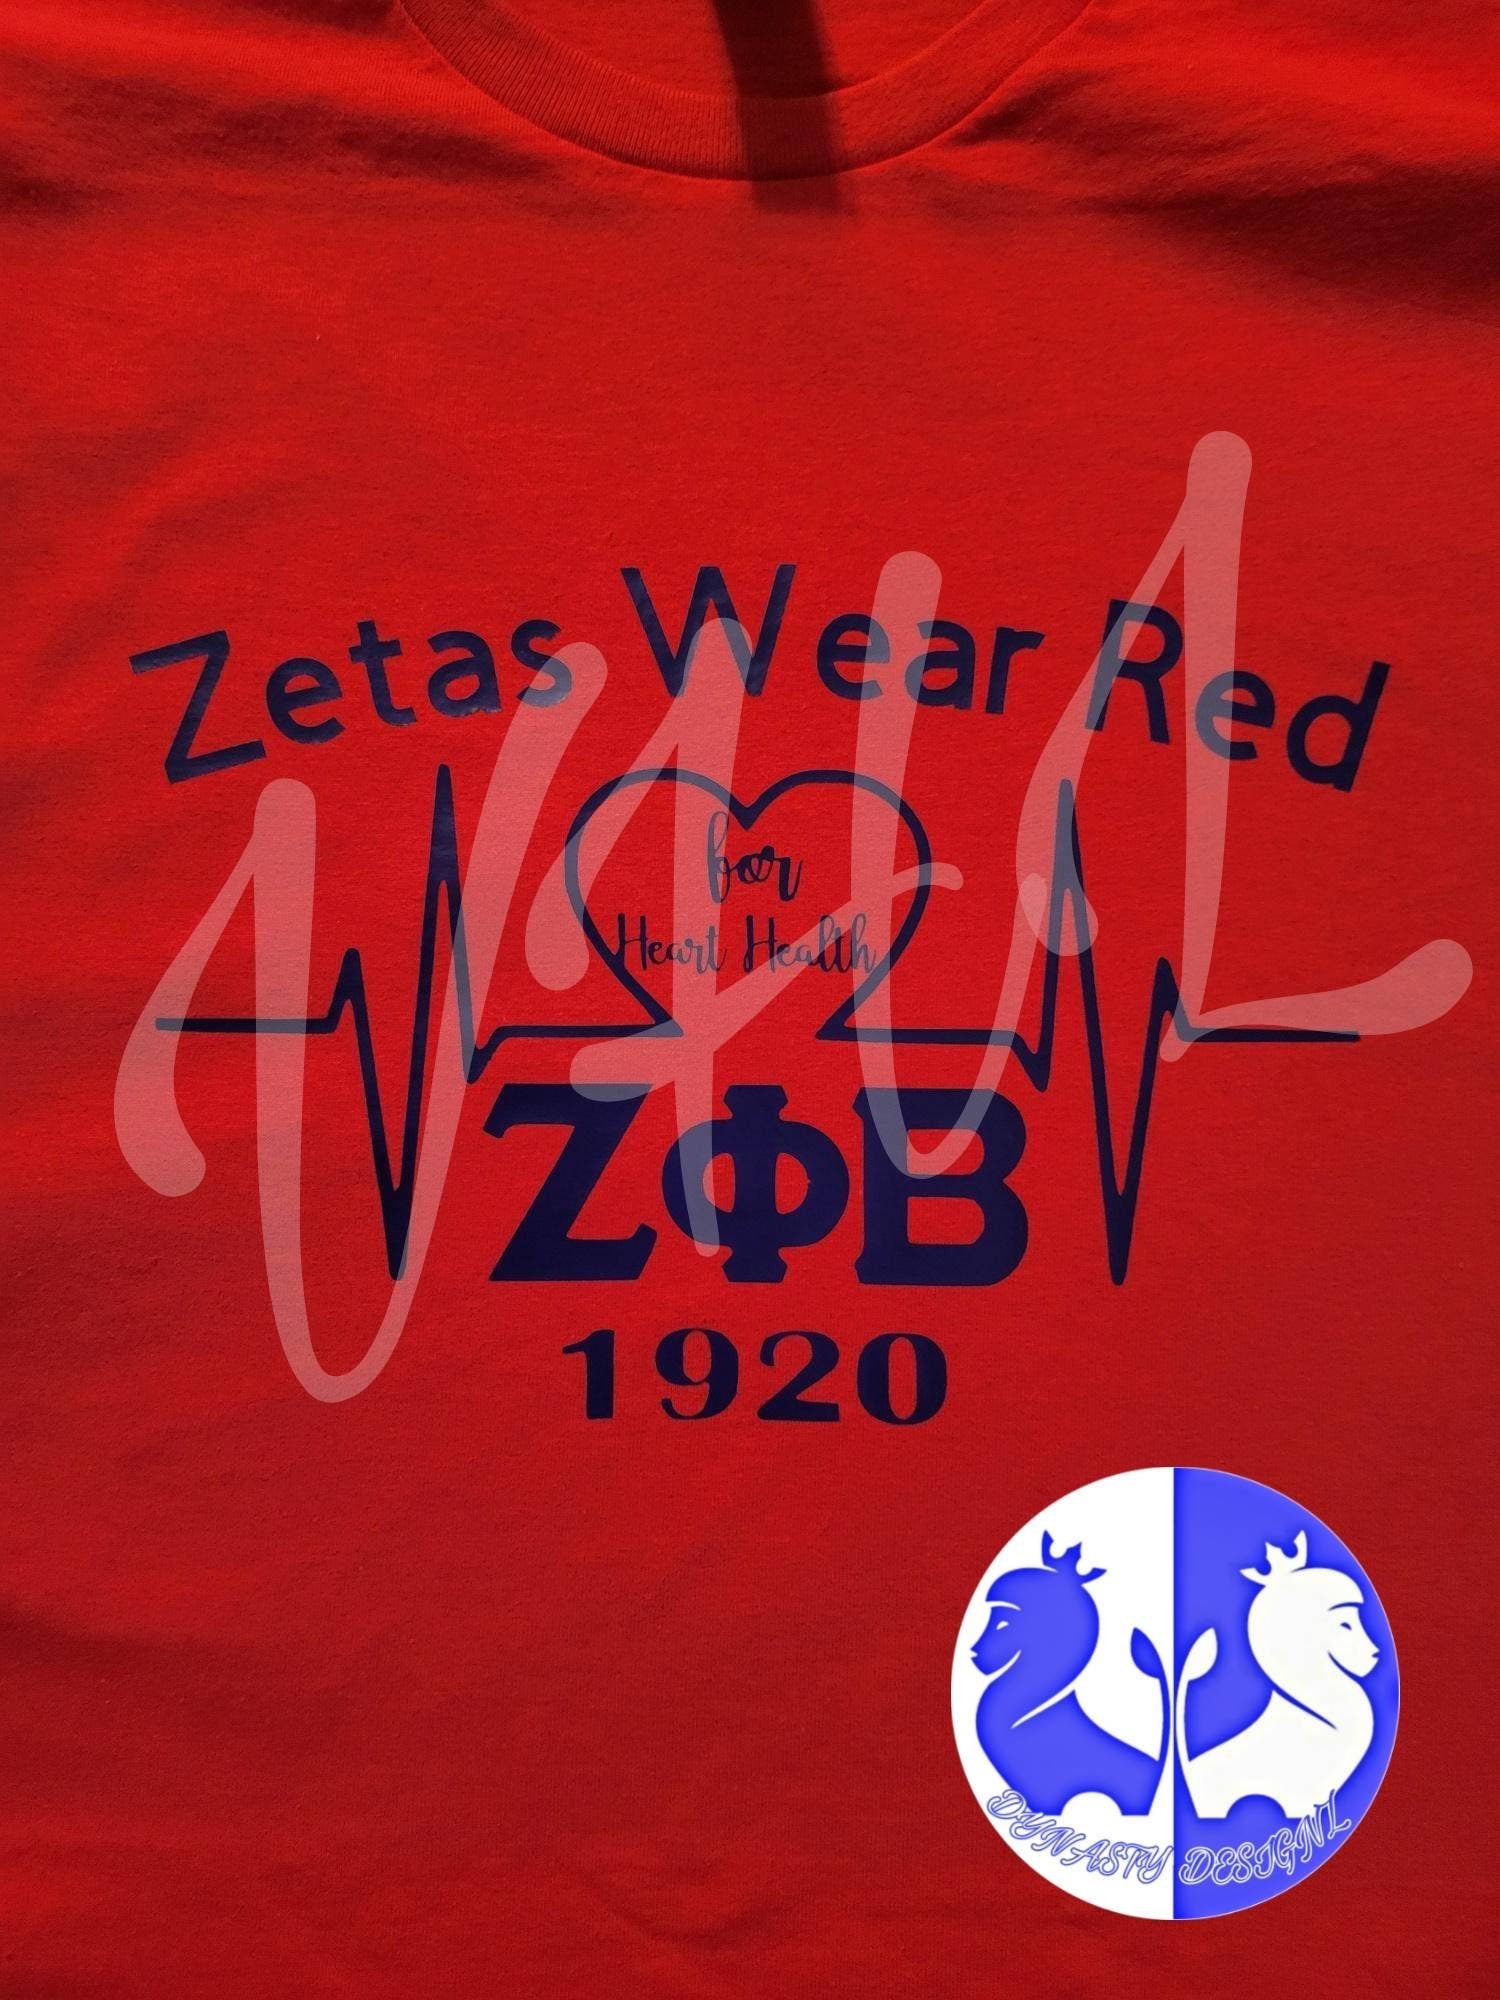 Zetas Wear Red